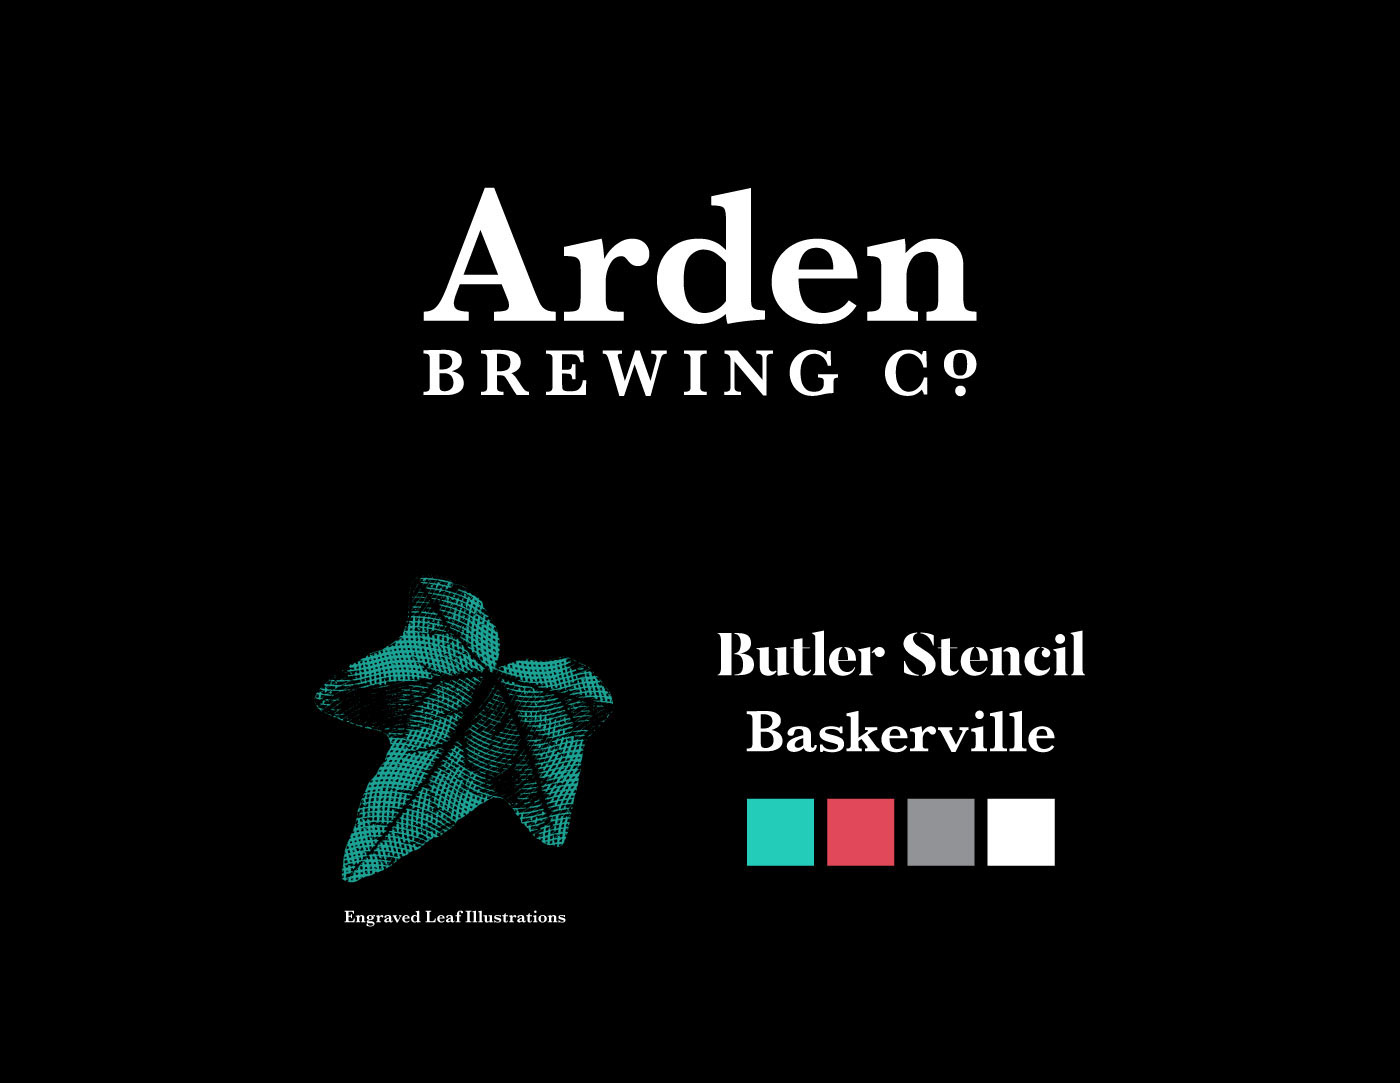 allison beer arden brewing company craft beer Packaging beer